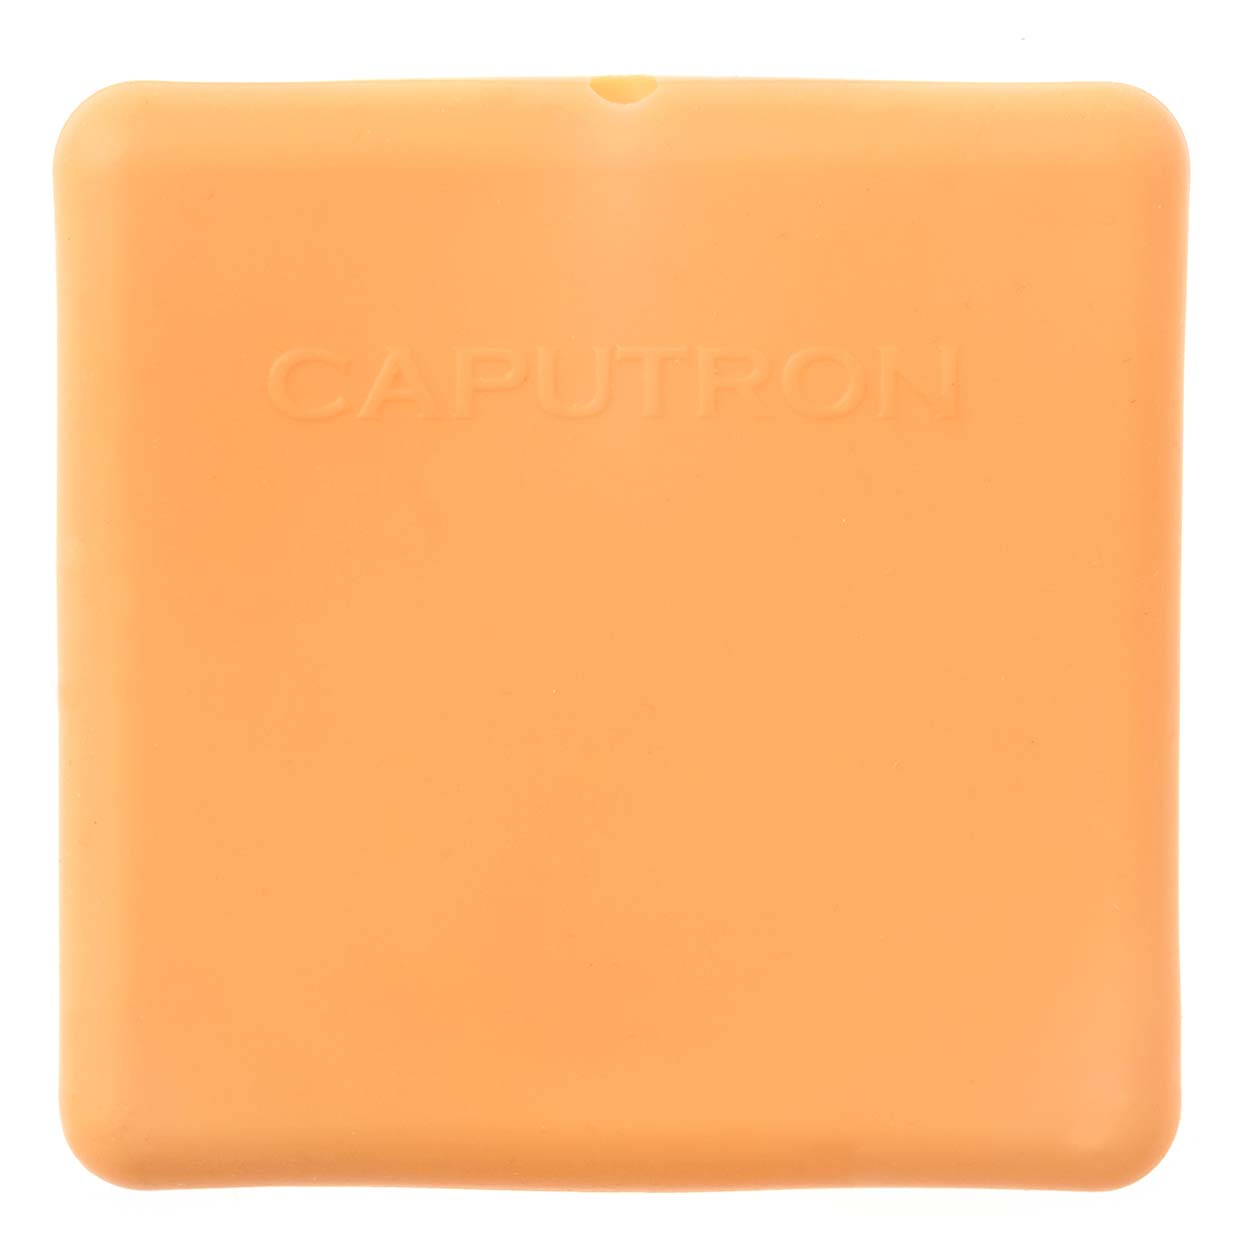 Caputron tDCS Electrode - Back View | Caputron